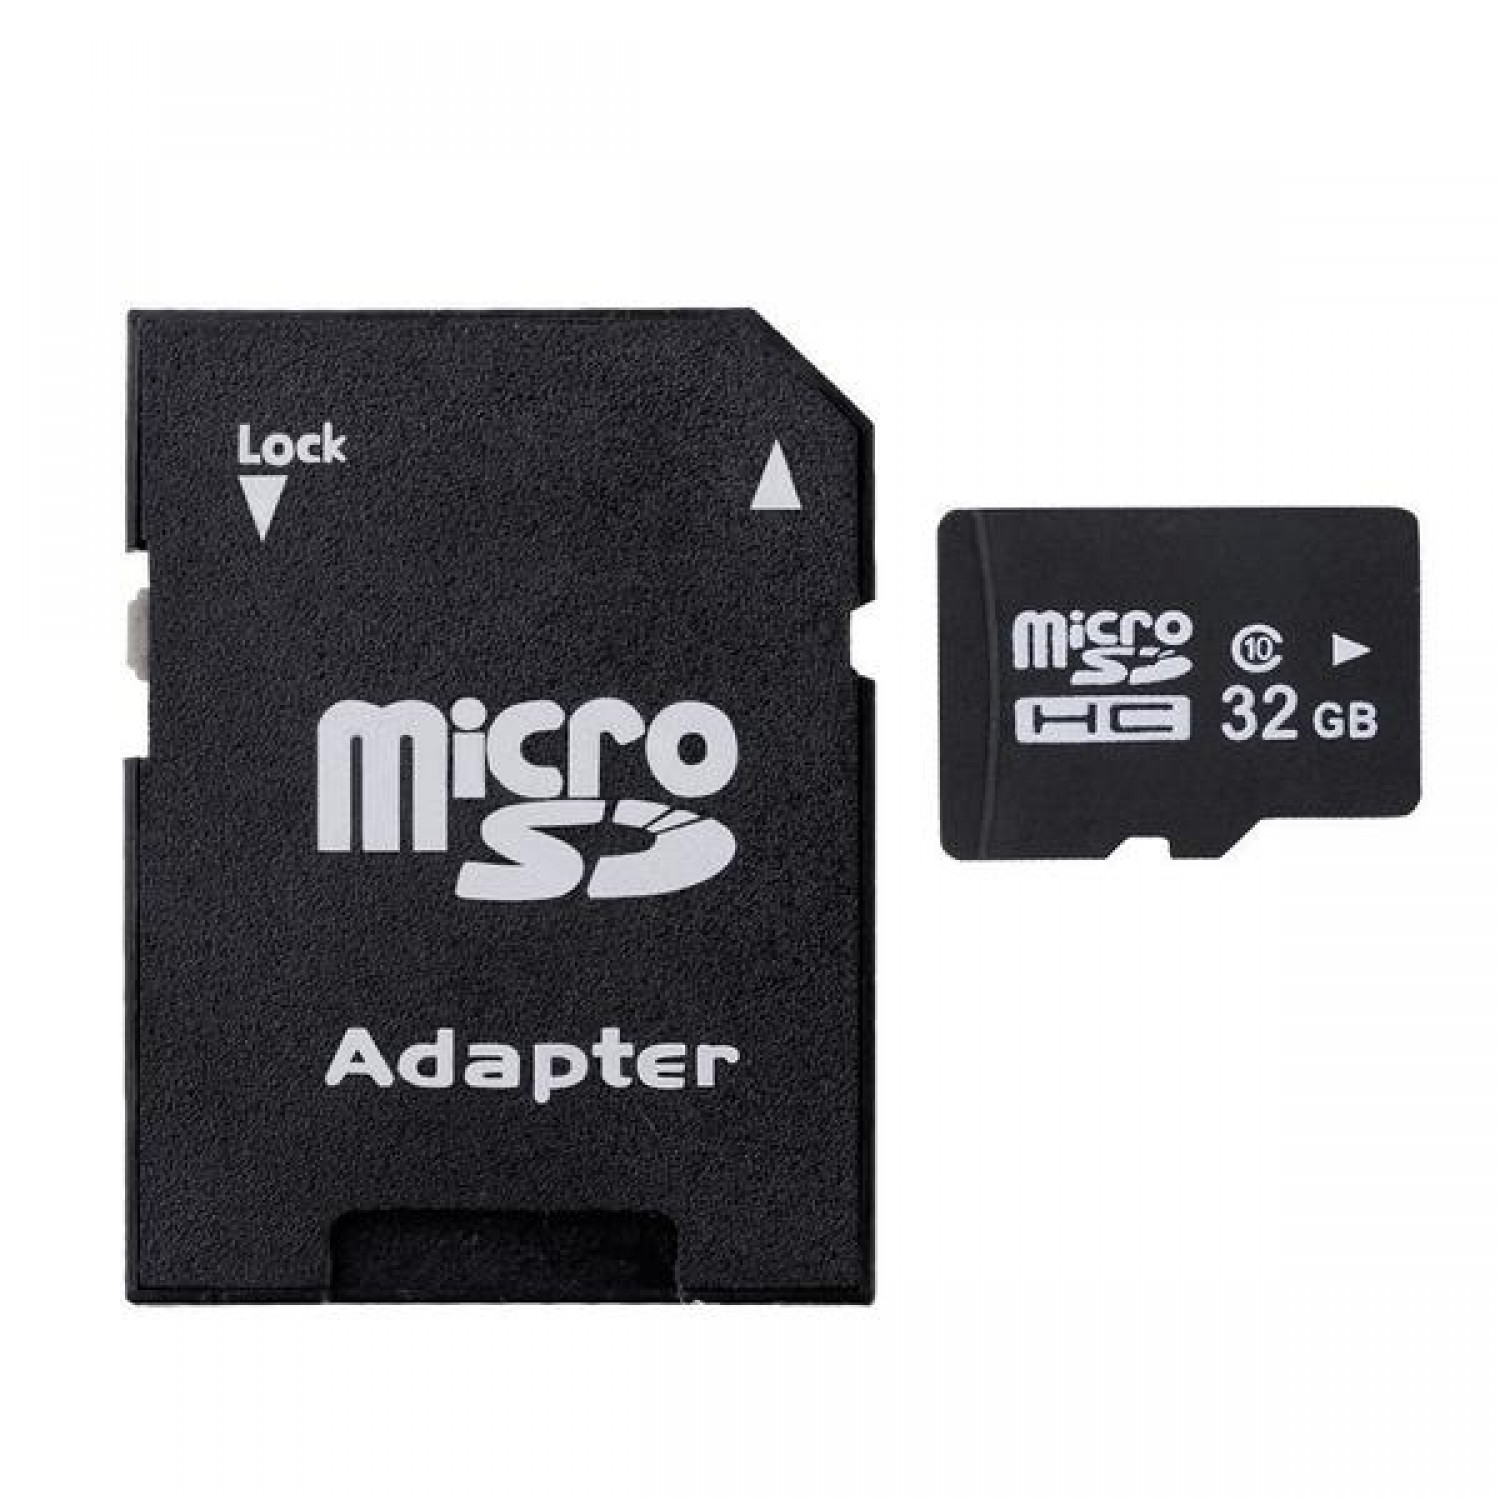 Адаптер microsdhc. Адаптер SD MICROSD. MICROSD 32gb. Микро СД 32 ГБ. MICROSD адаптер для SD карт.